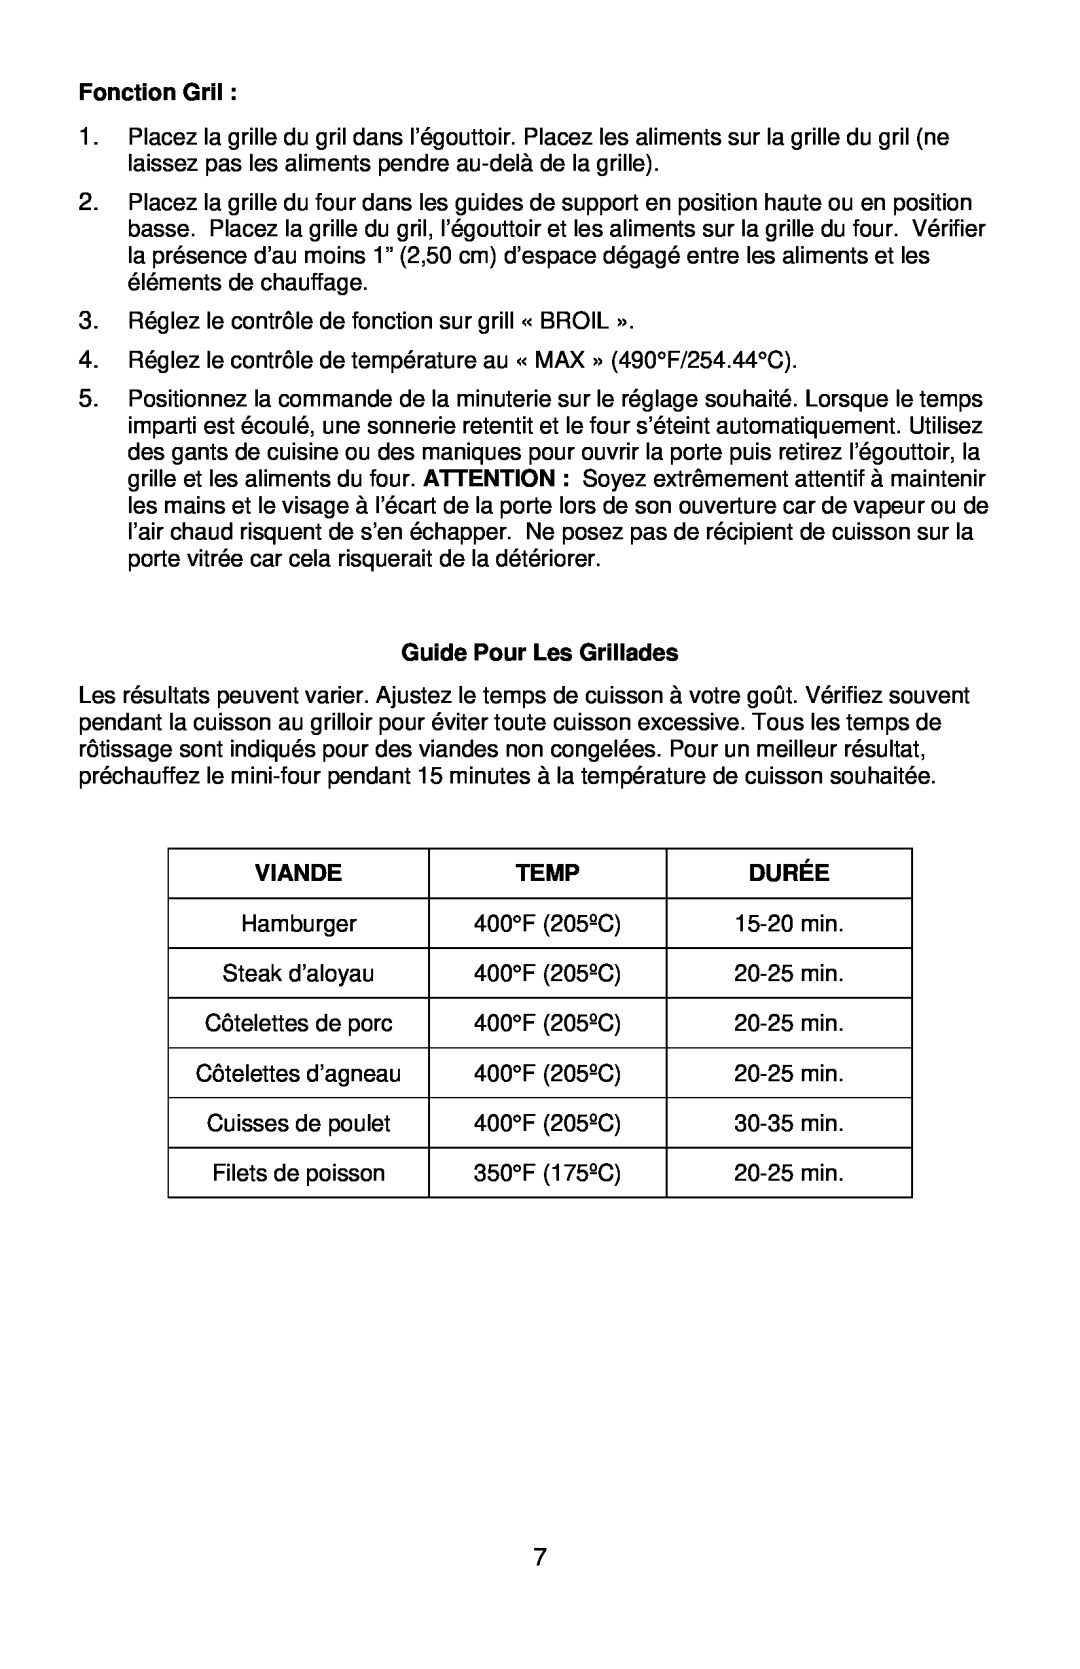 West Bend L5658B instruction manual Fonction Gril, Guide Pour Les Grillades, Viande, Temp, Durée 